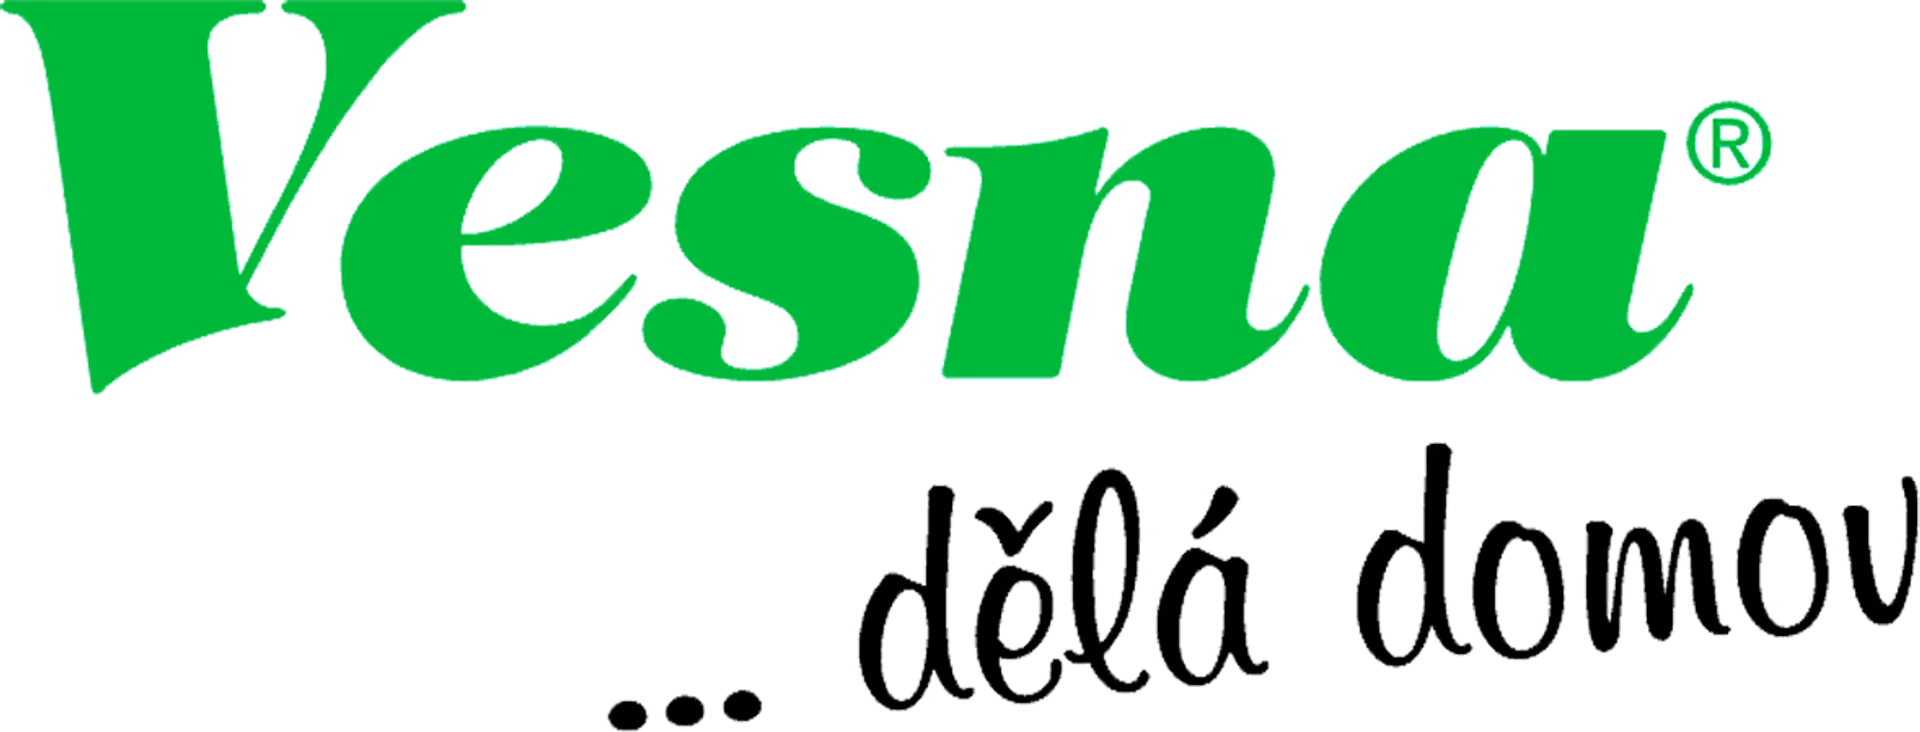 VESNA logo